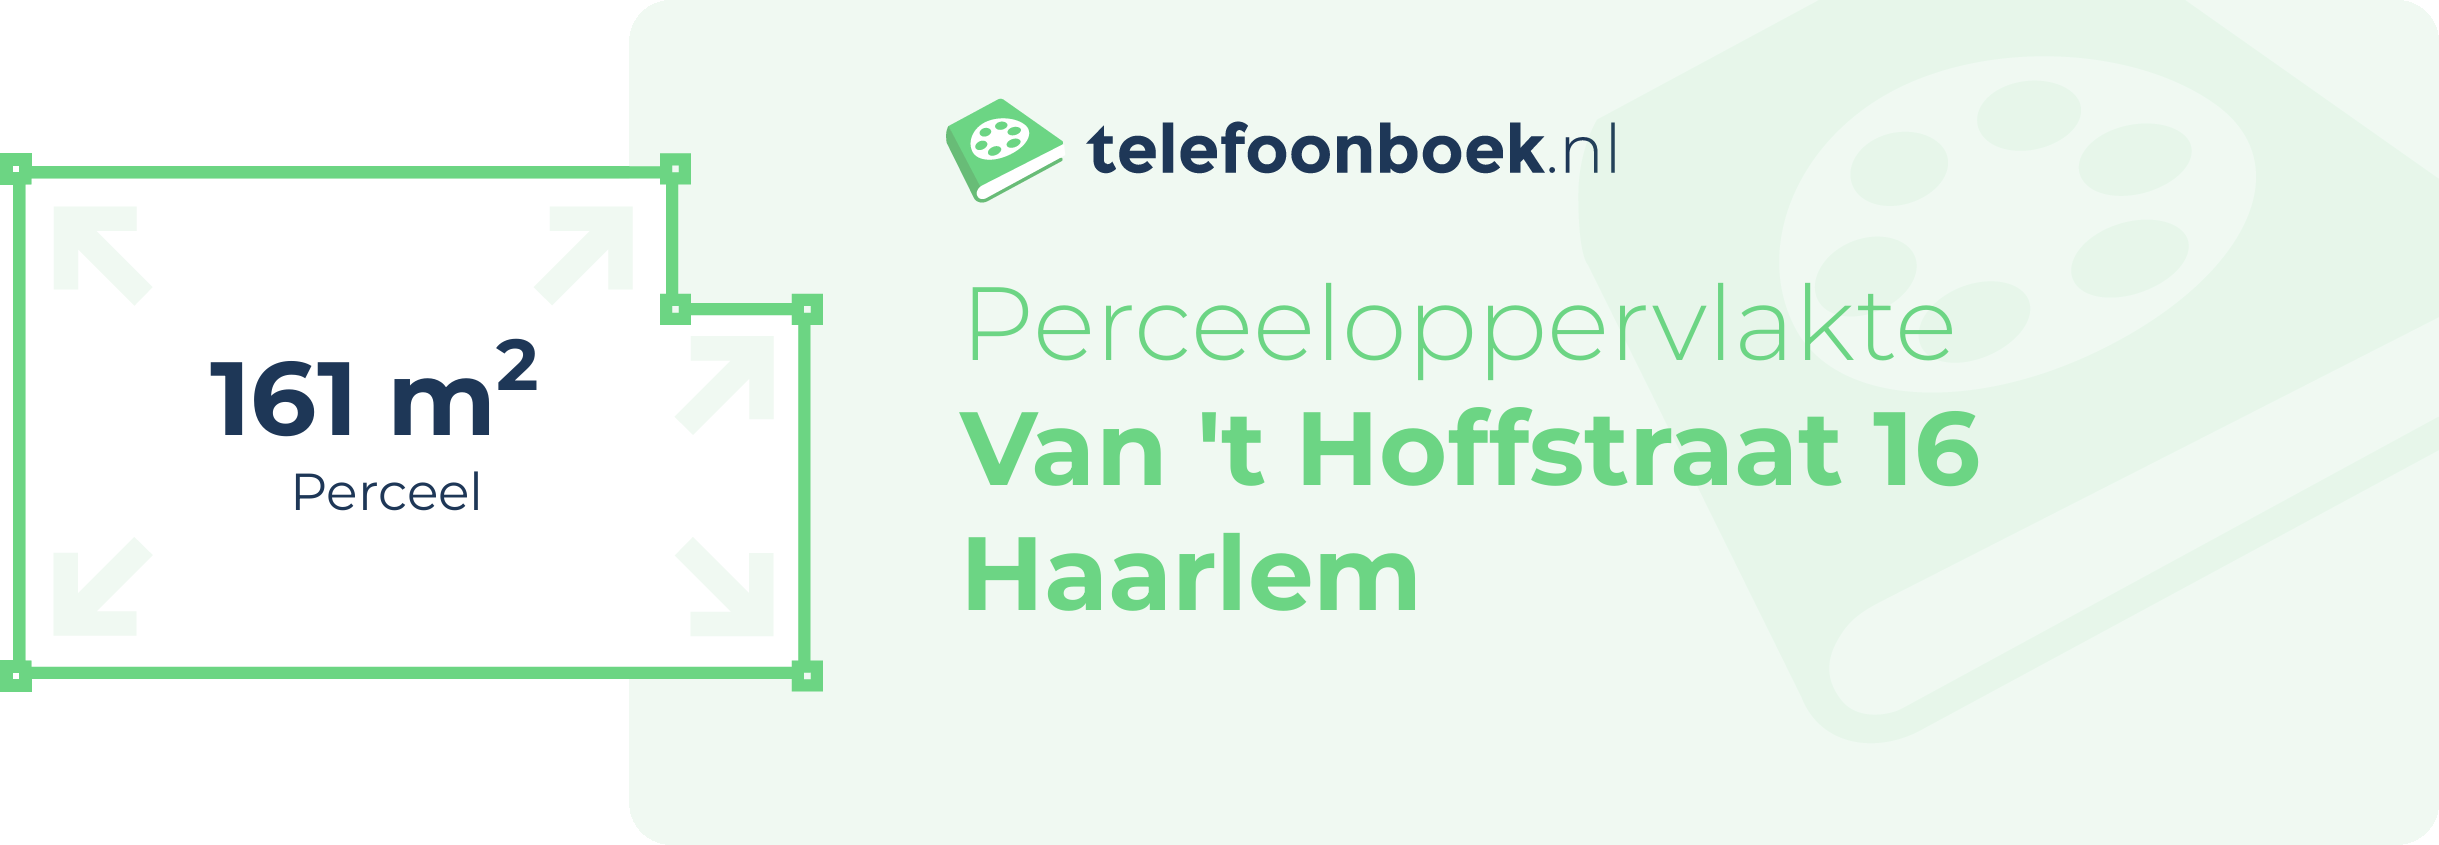 Perceeloppervlakte Van 't Hoffstraat 16 Haarlem